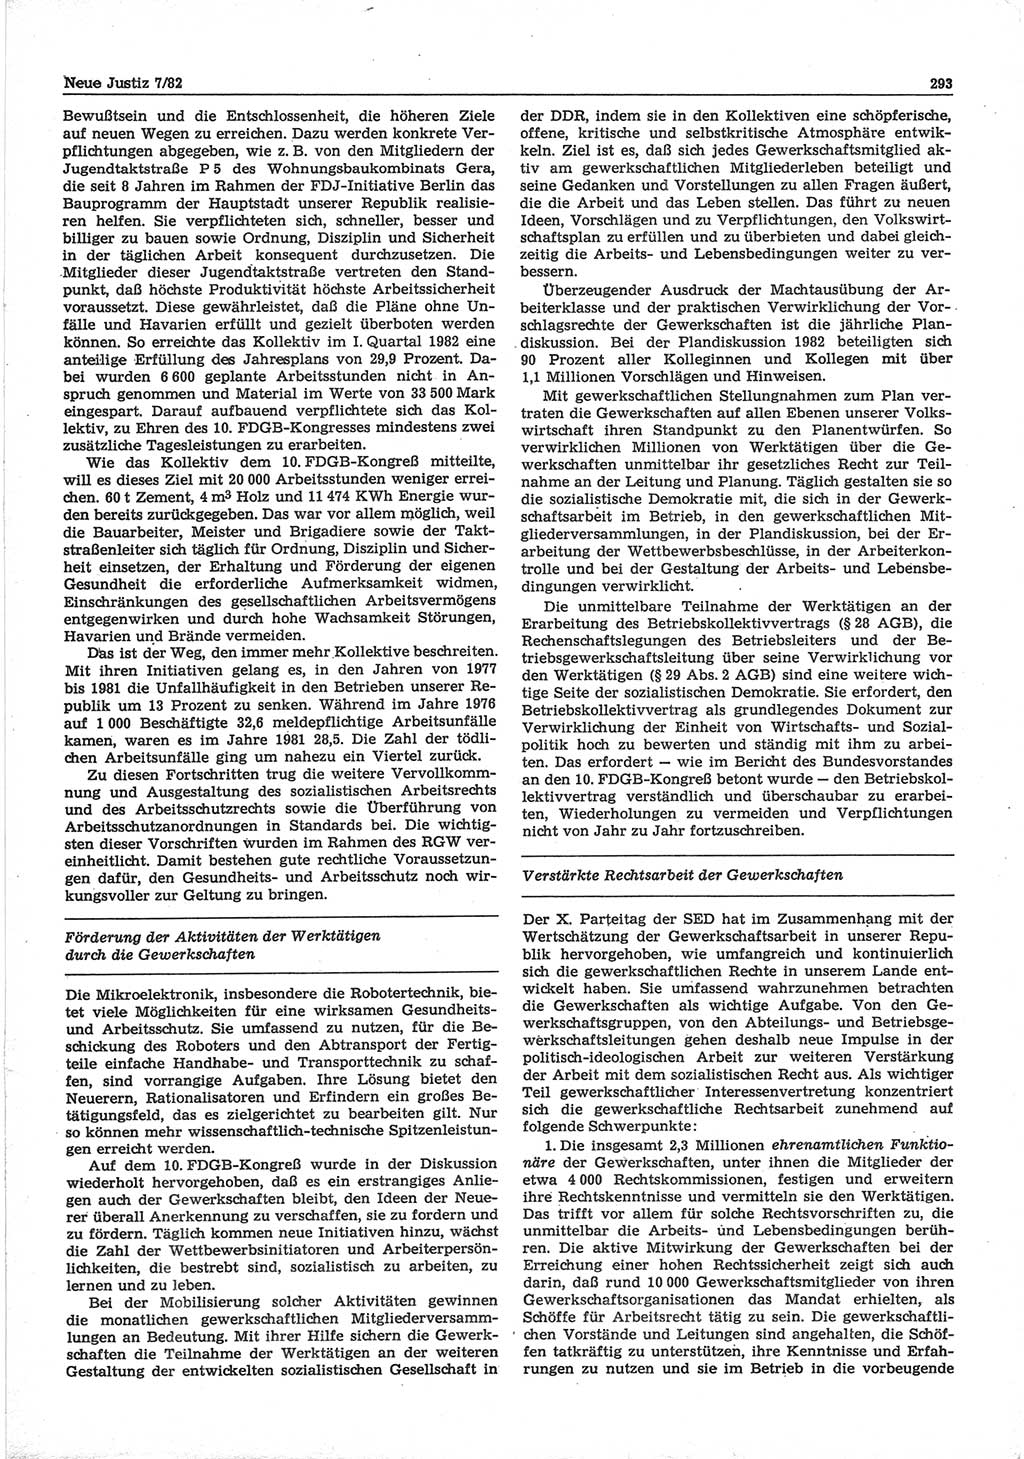 Neue Justiz (NJ), Zeitschrift für sozialistisches Recht und Gesetzlichkeit [Deutsche Demokratische Republik (DDR)], 36. Jahrgang 1982, Seite 293 (NJ DDR 1982, S. 293)